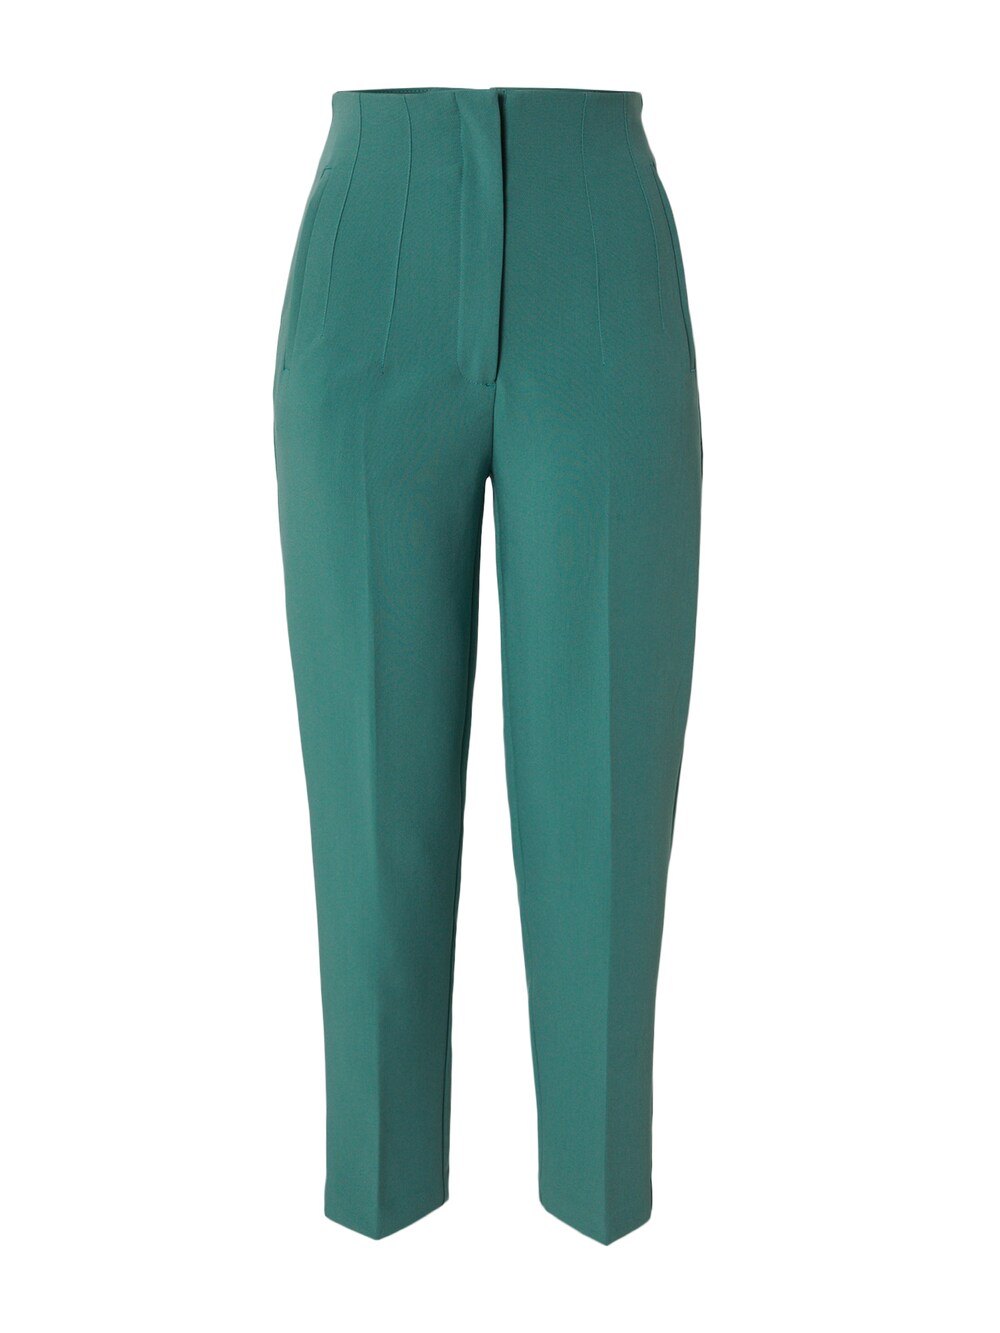 Обычные плиссированные брюки Edited Charlotta, зеленый